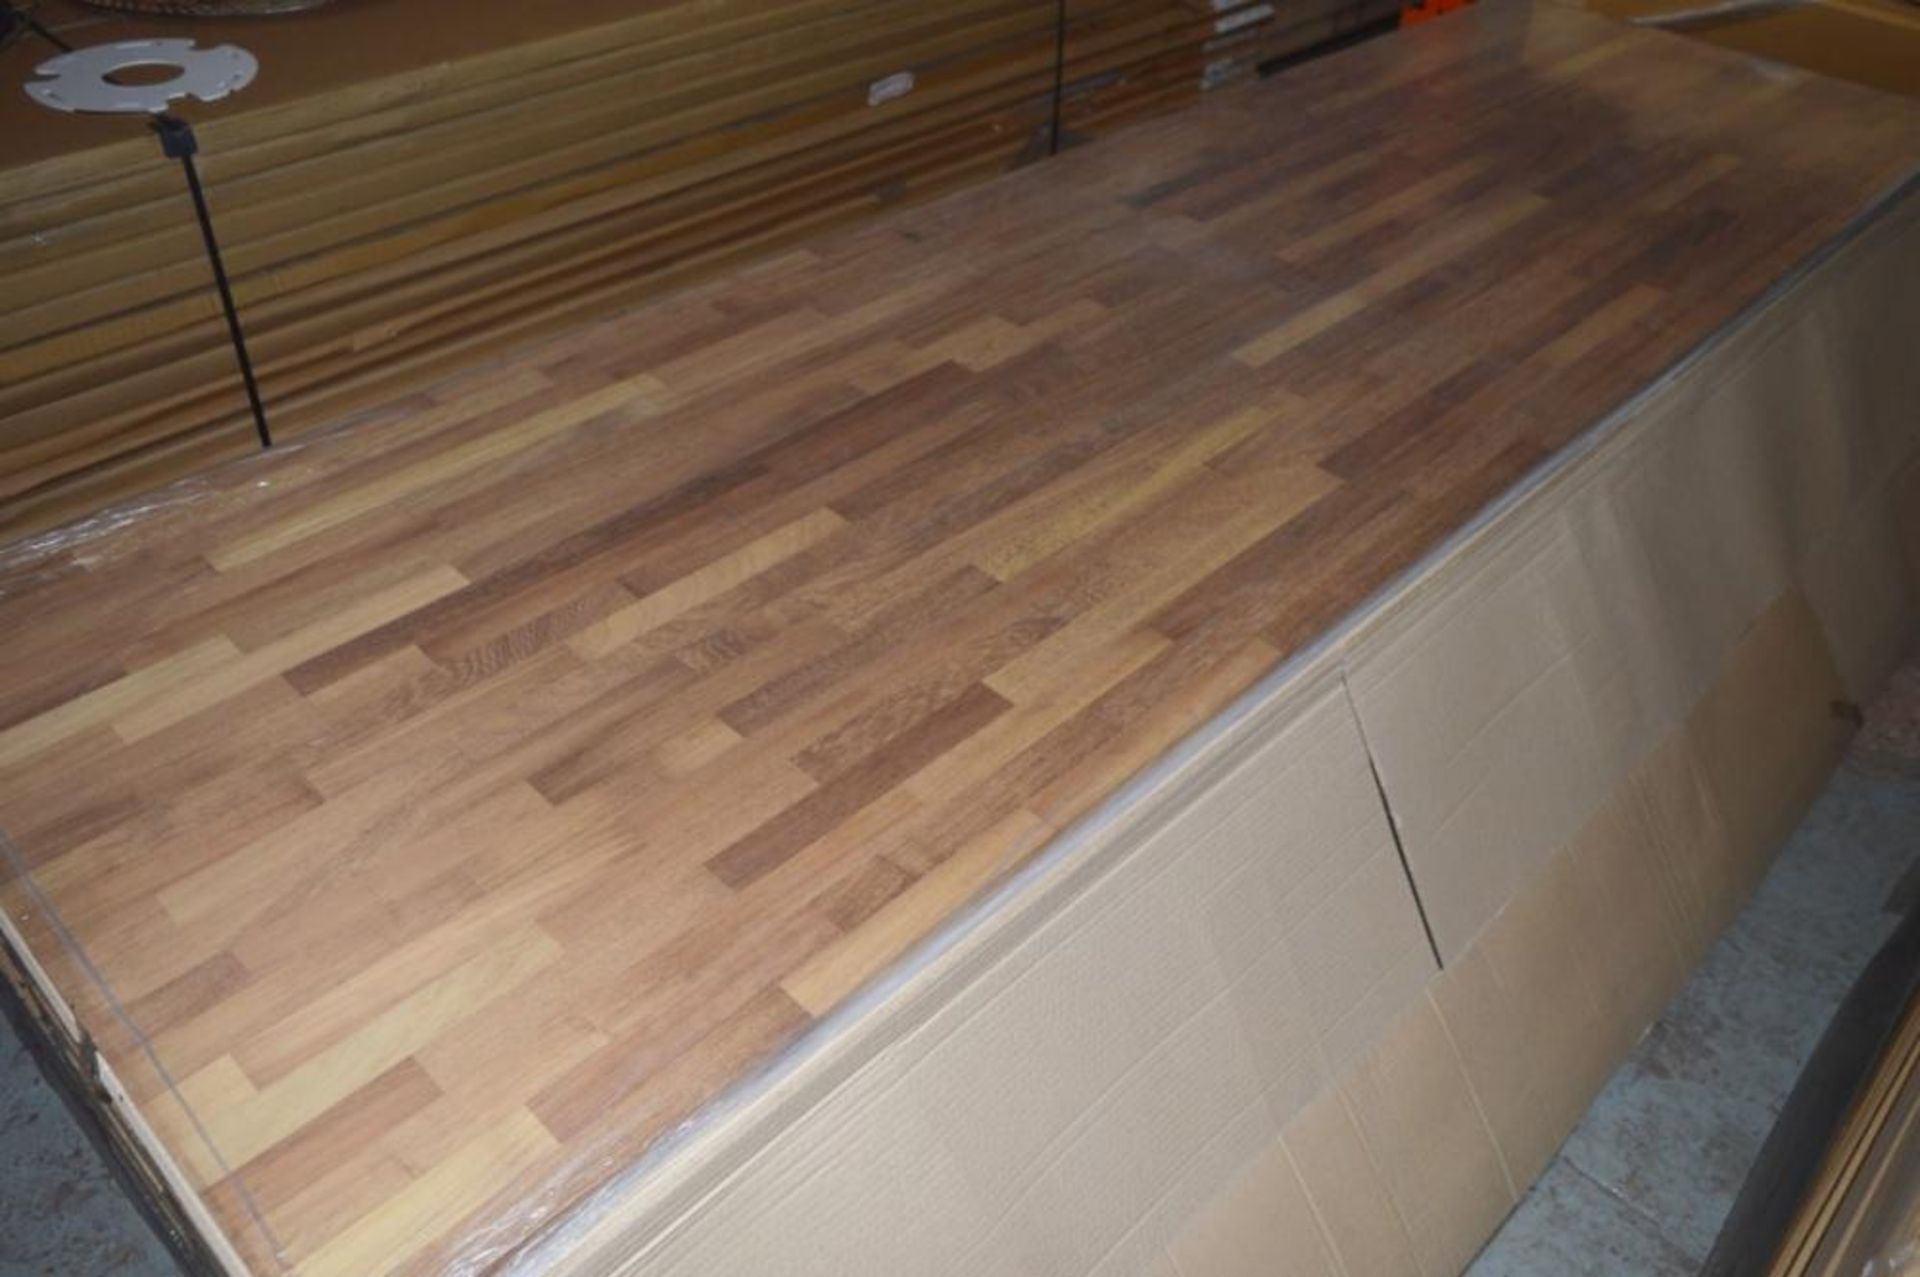 1 x Solid Wood Kitchen Worktop - IROKO - Iroko Blockwood Kitchen Worktop - Size: 3000 x 900 x 32mm - - Image 3 of 4